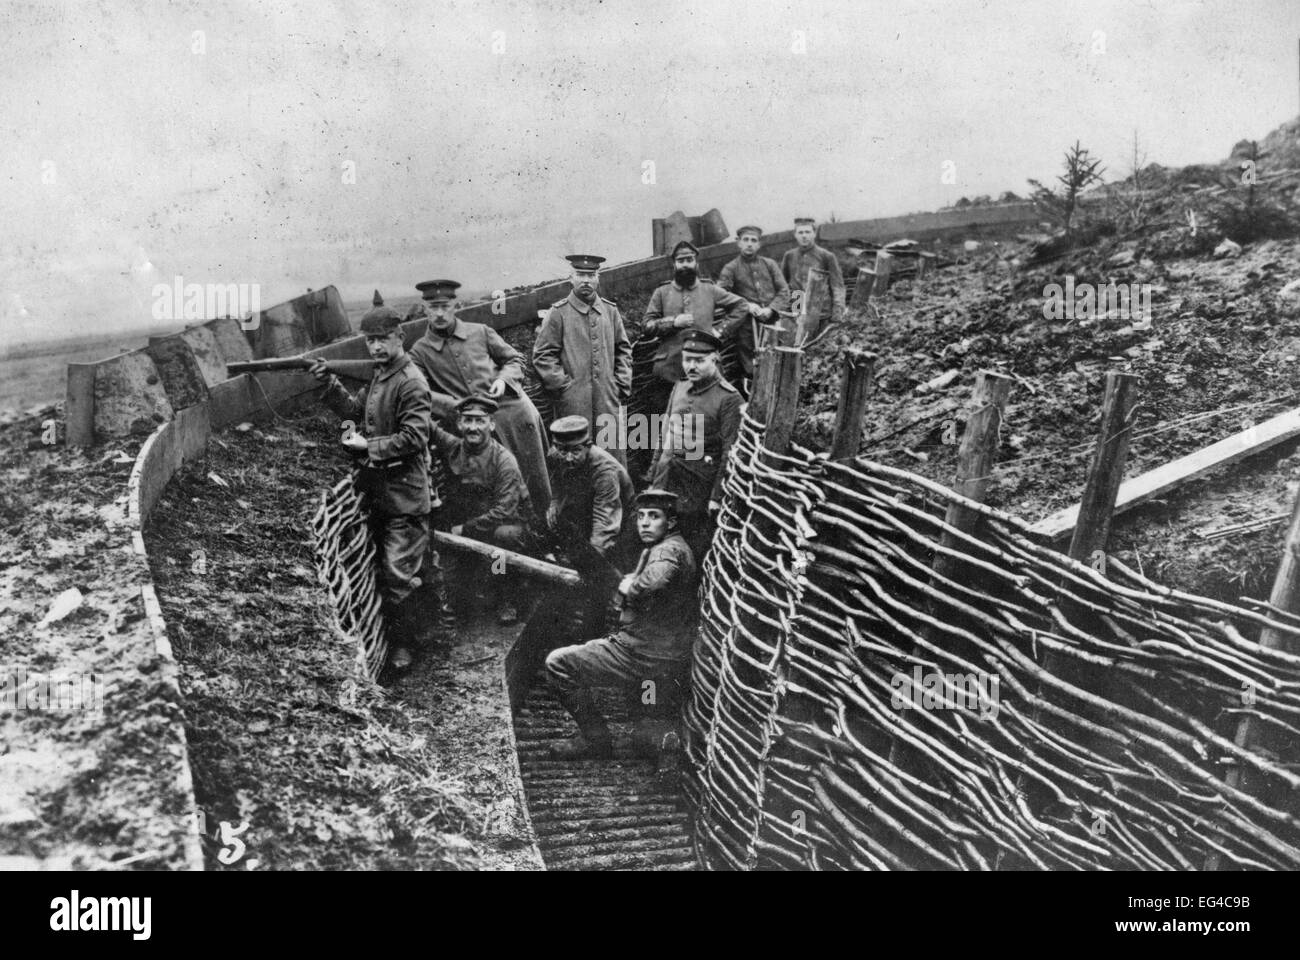 Personnel militaire allemand dans une tranchée pendant la Première Guerre mondiale Banque D'Images